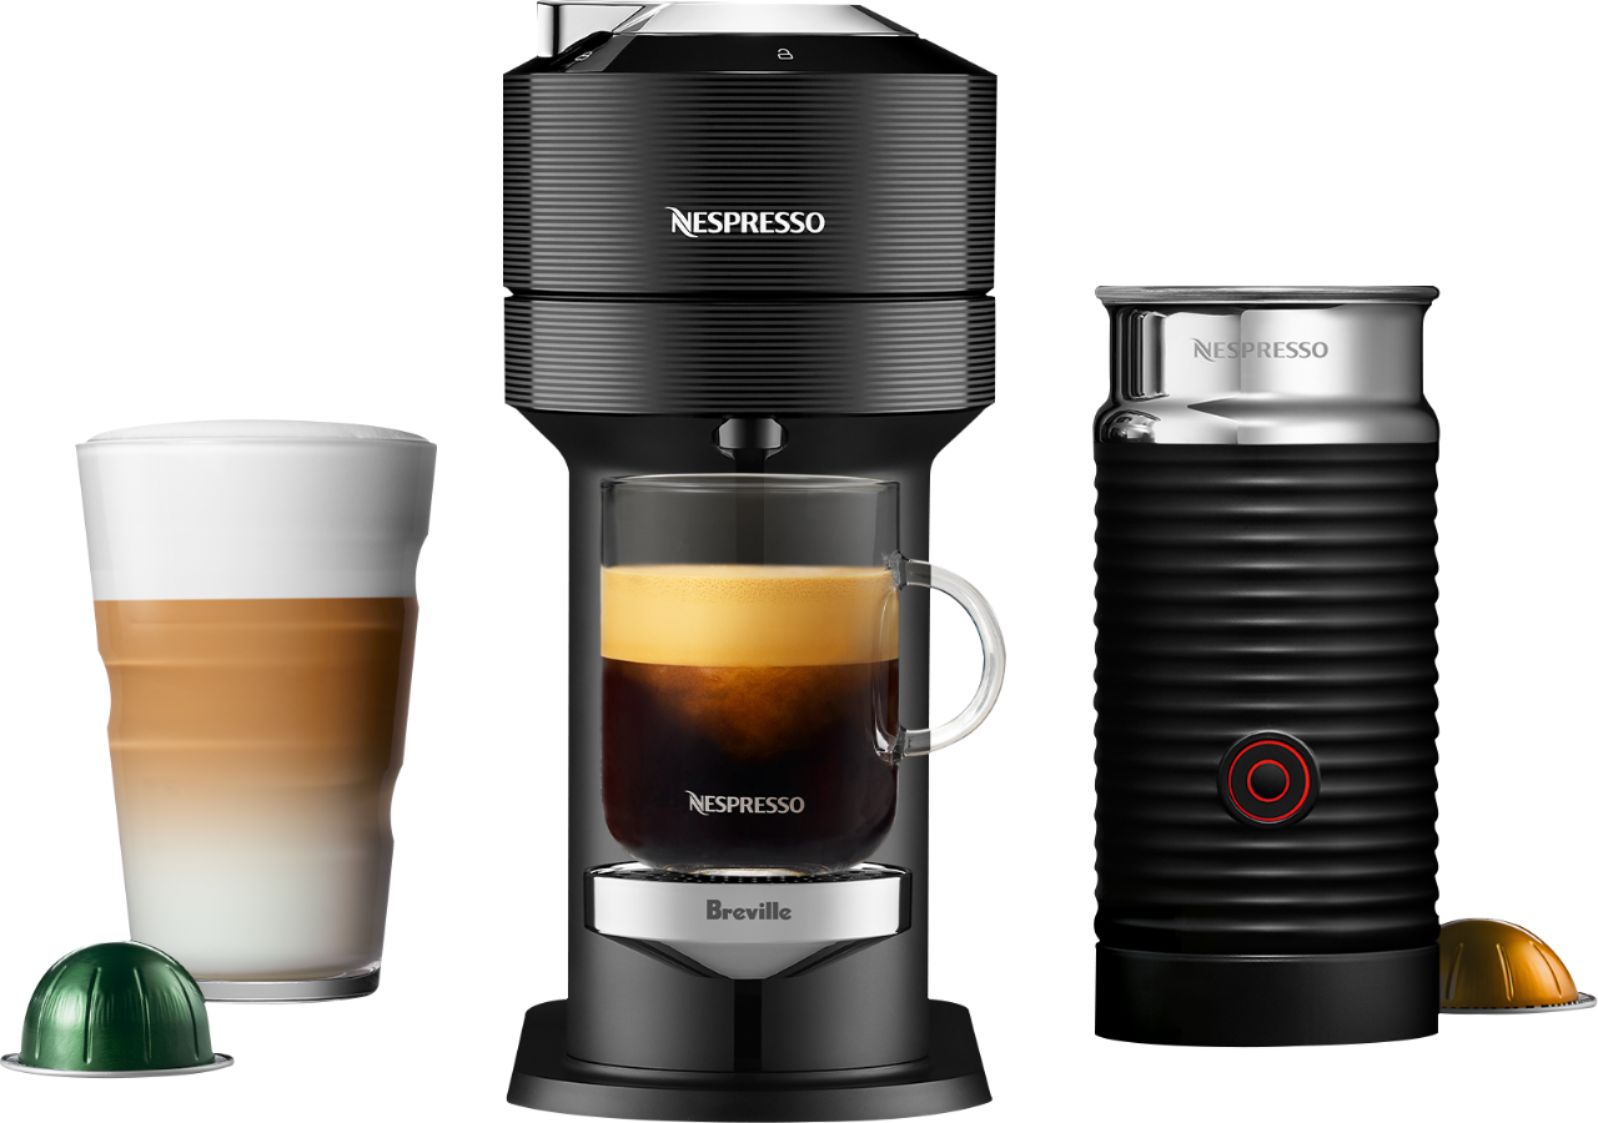  Nespresso - Vertuo Next Premium Classic Black by Breville with Aeroccino3 - Classic Black.